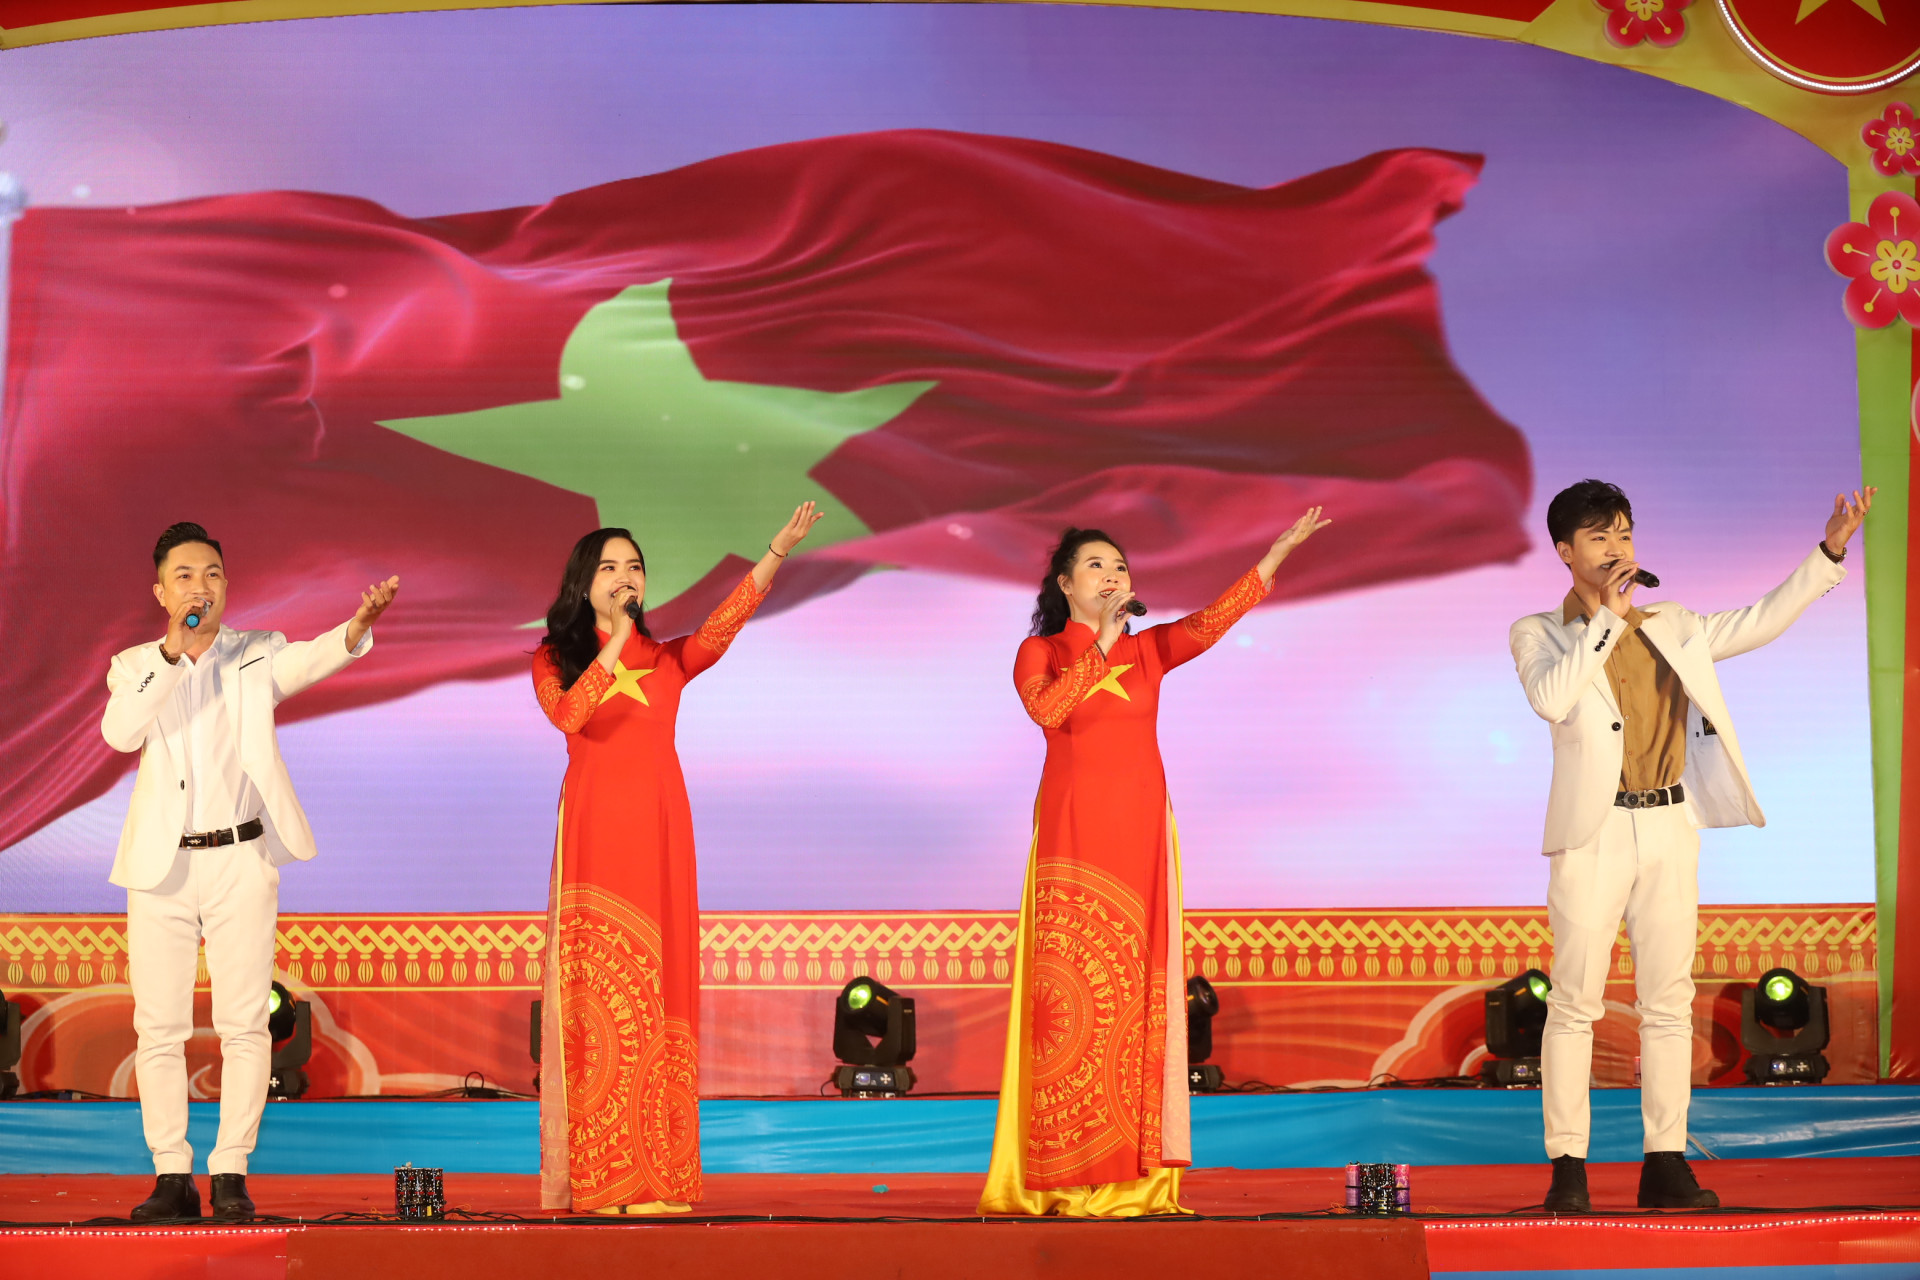 Ca khúc “Lá cờ” của ca sĩ - nhạc sĩ Tạ Quang Thắng được ngân lên như thêm tình yêu, niềm tự hào đối với quê hương, đất nước.